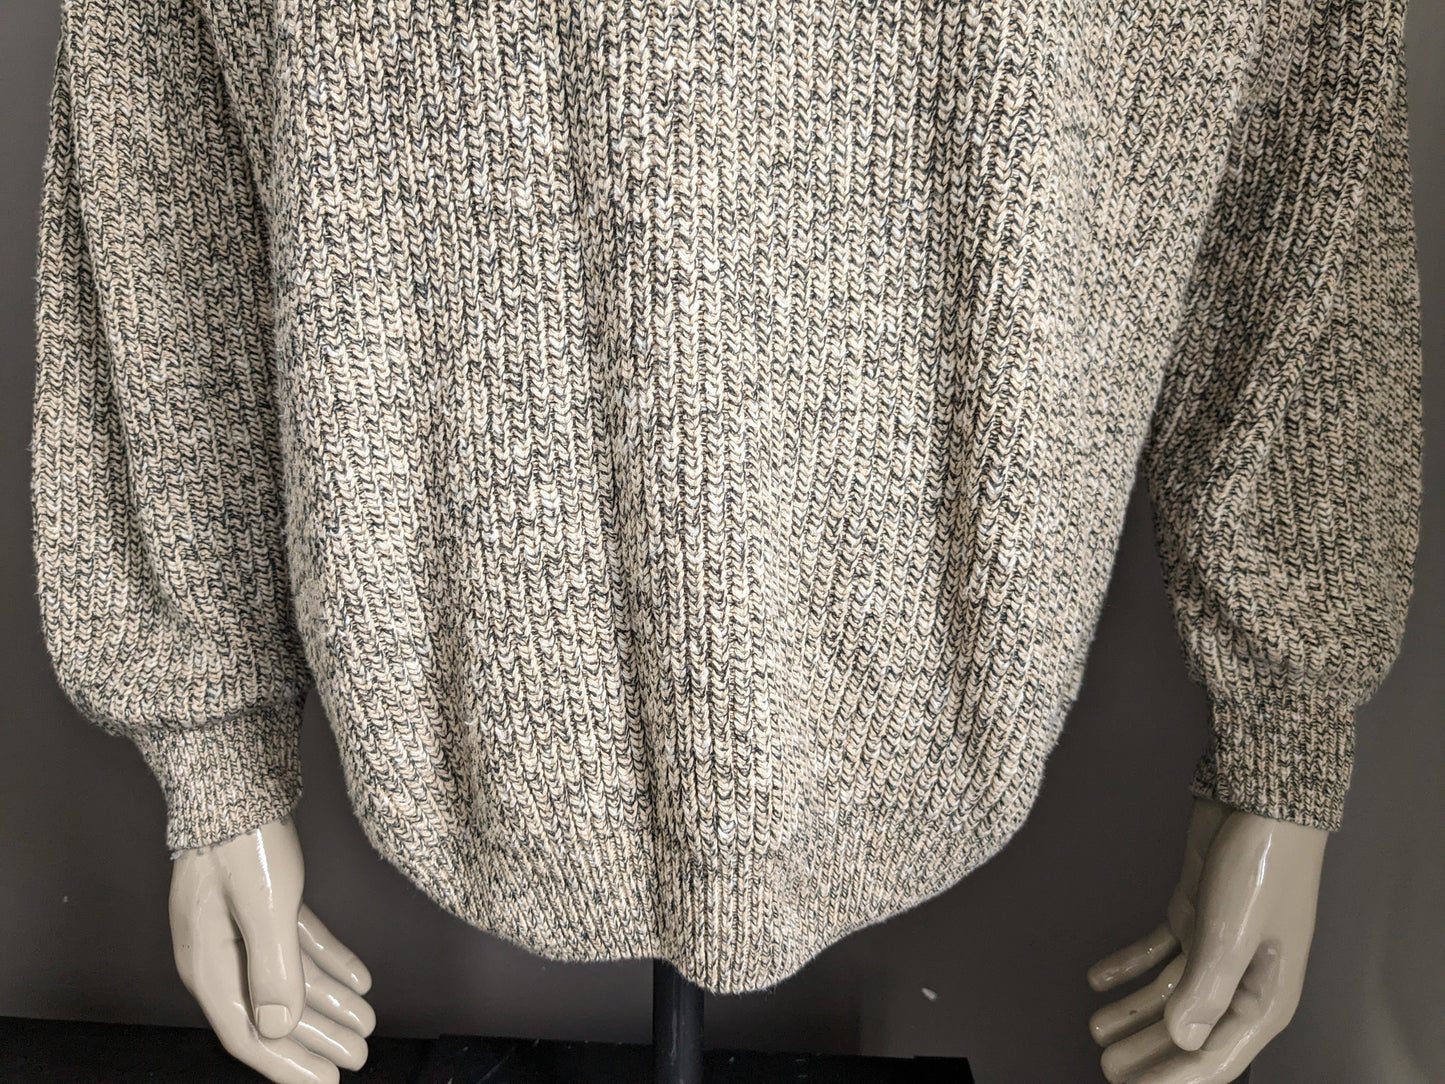 Suéter vintage de moda del hombre. Beige gris mezclado. Tamaño L / XL Modelo de gran tamaño vintage.